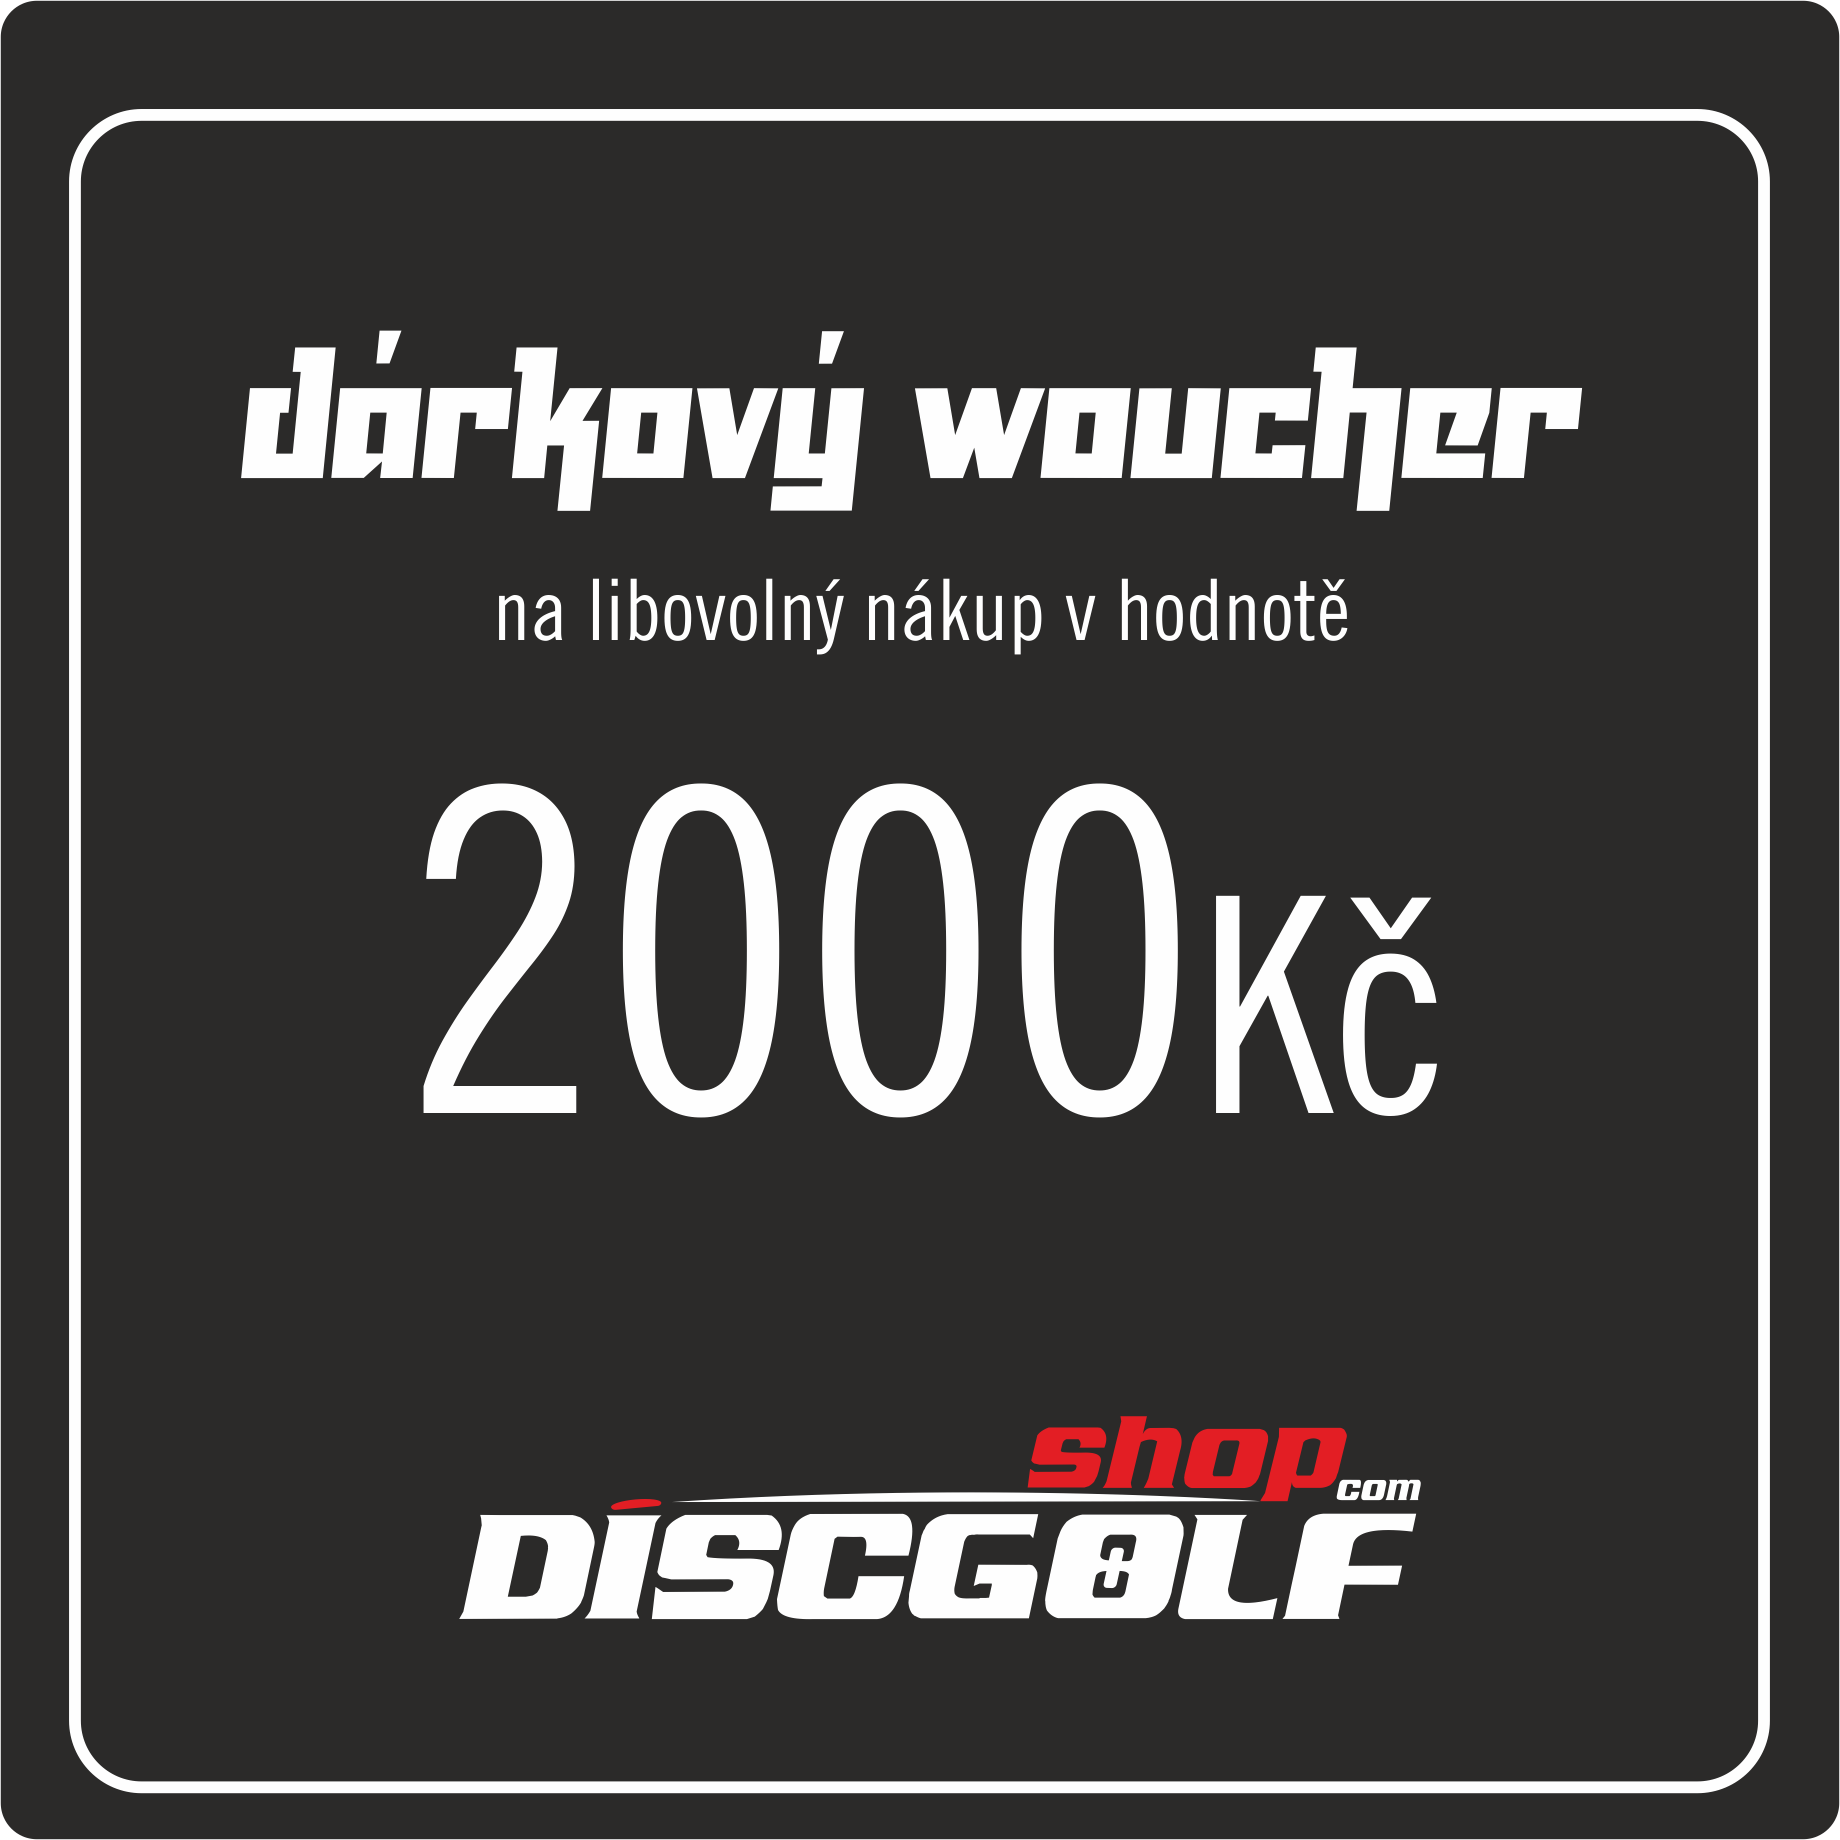 Dárkový woucher - kupon 2000Kč (discgolf)